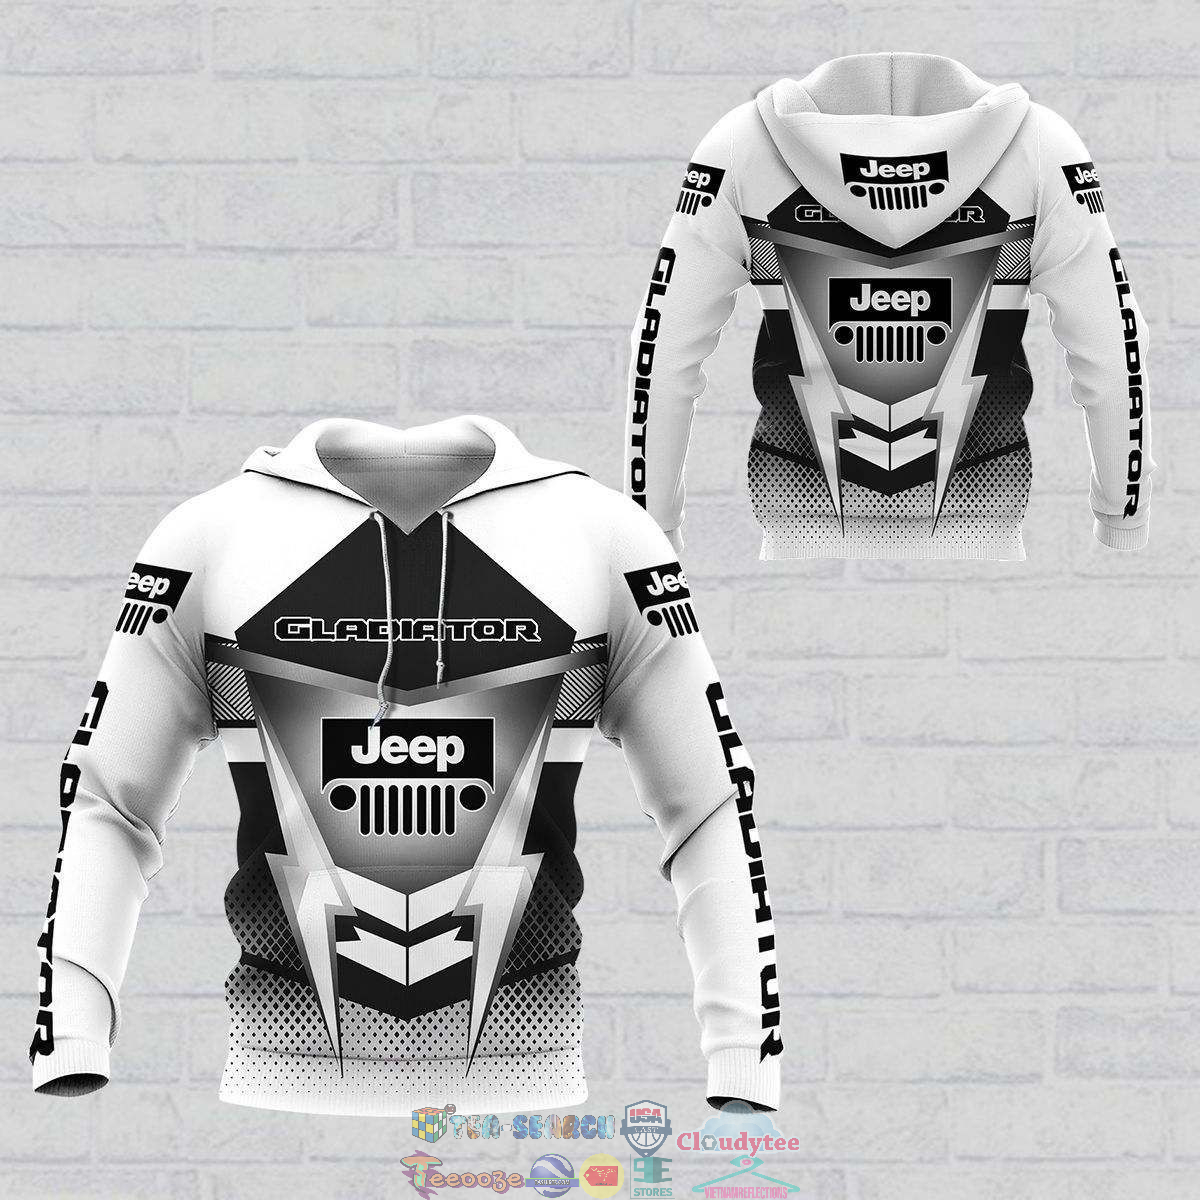 iPsSvBNZ-TH100822-56xxxJeep-Gladiator-ver-9-3D-hoodie-and-t-shirt3.jpg